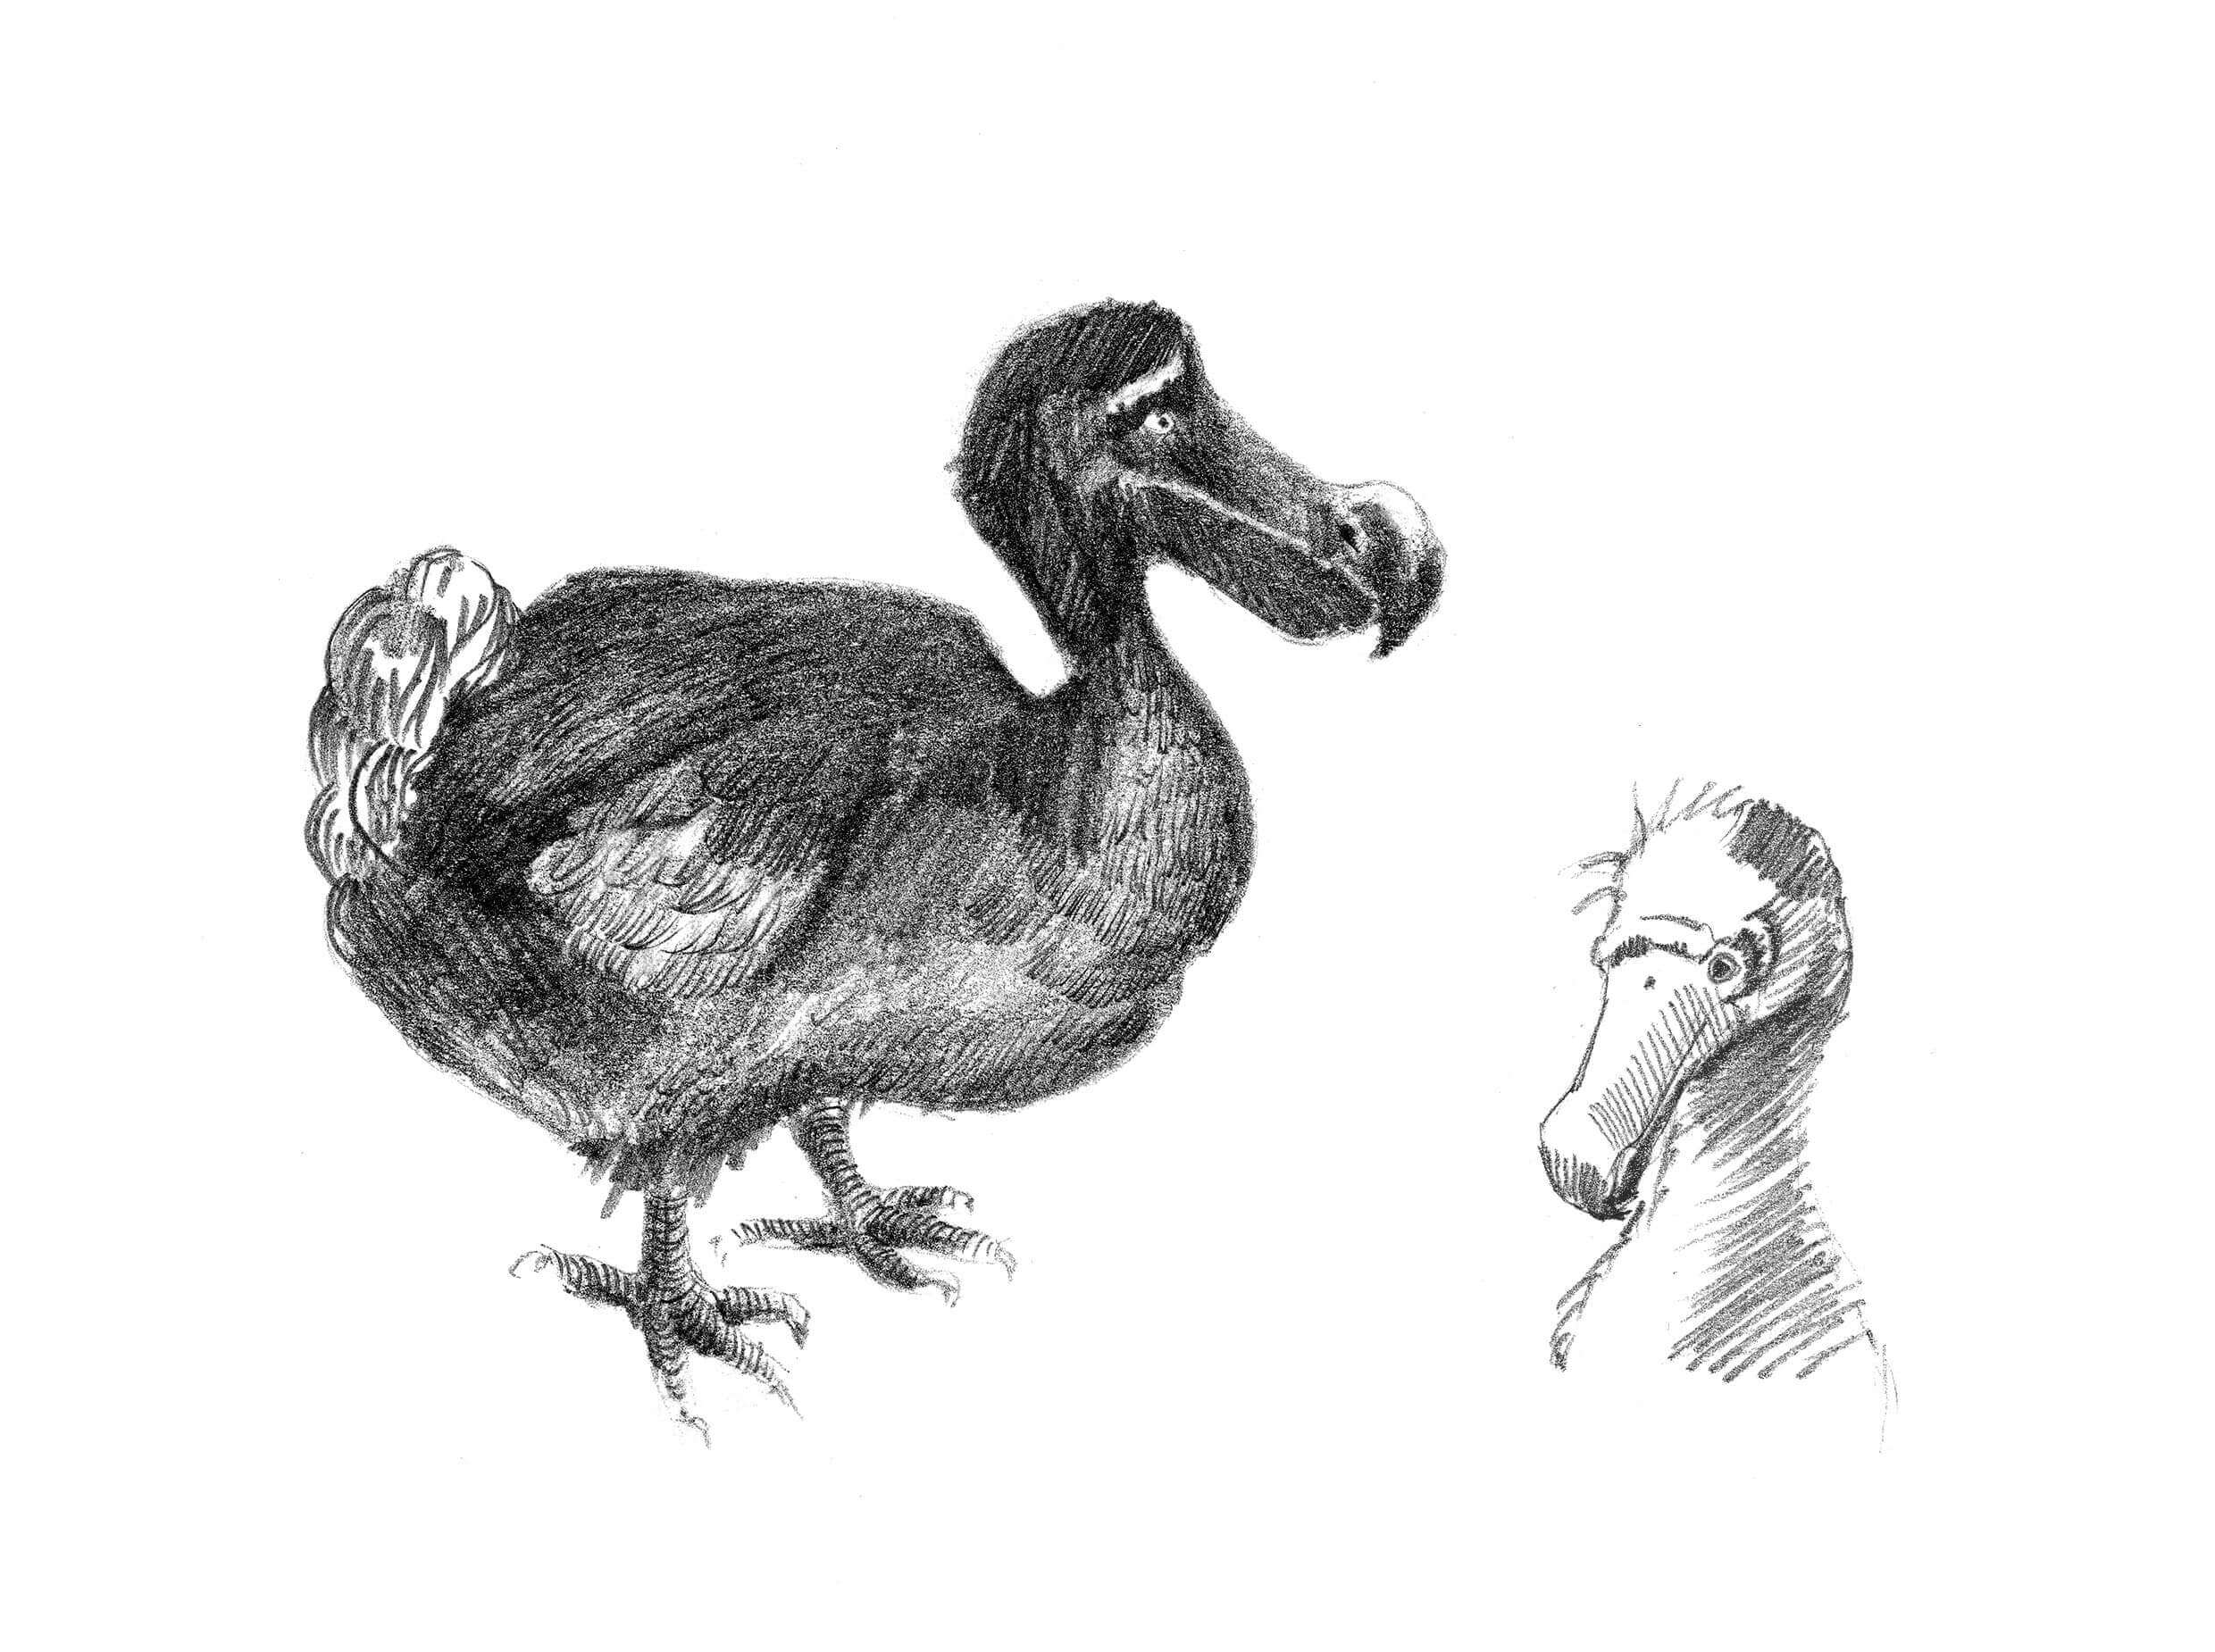 Il dodo